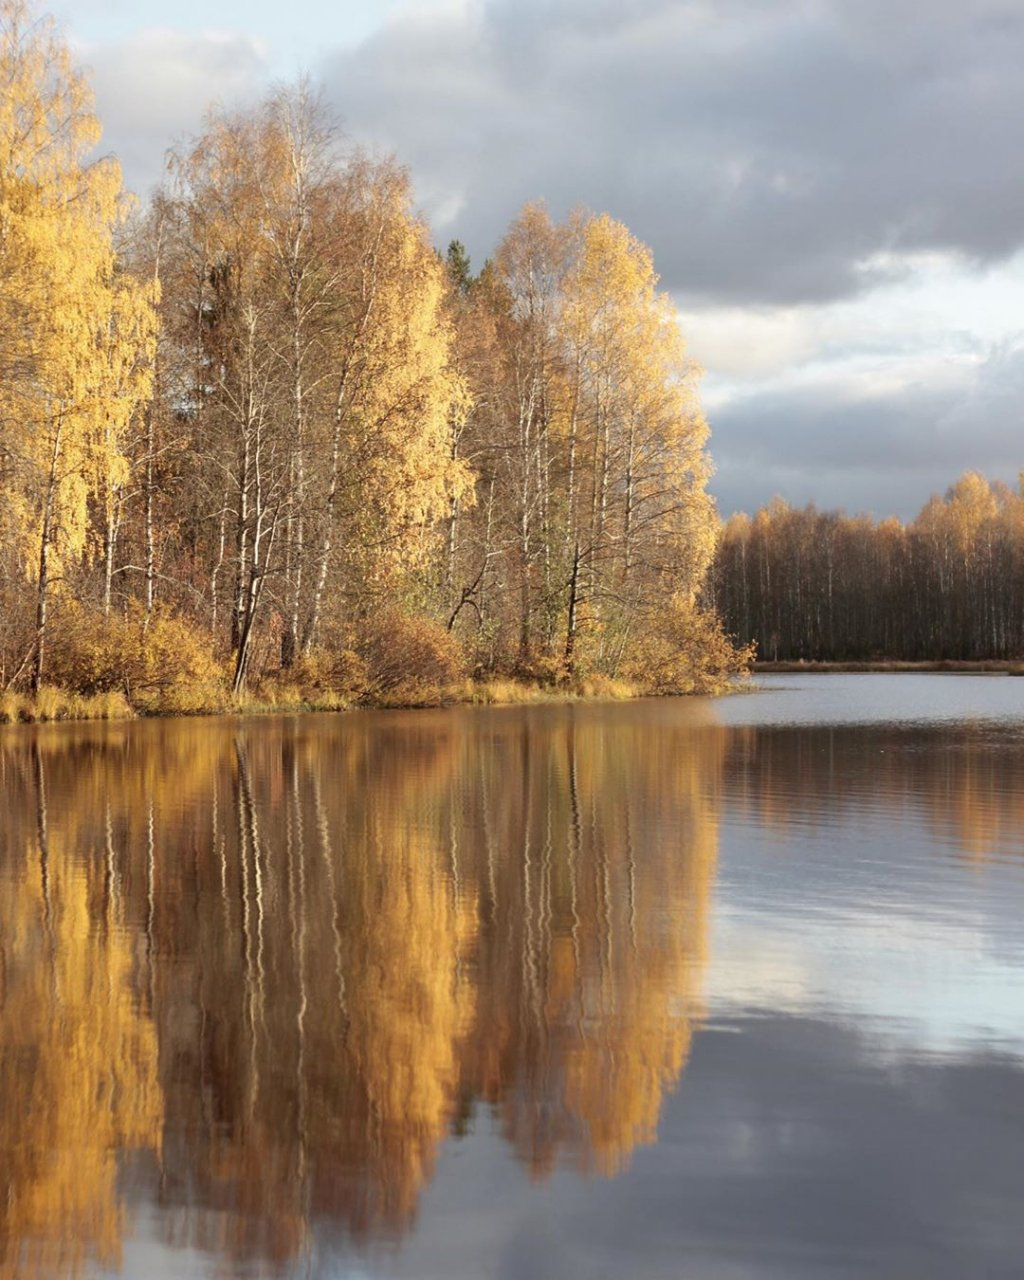 Фото дня в Сыктывкаре: осенний пейзаж над водной гладью